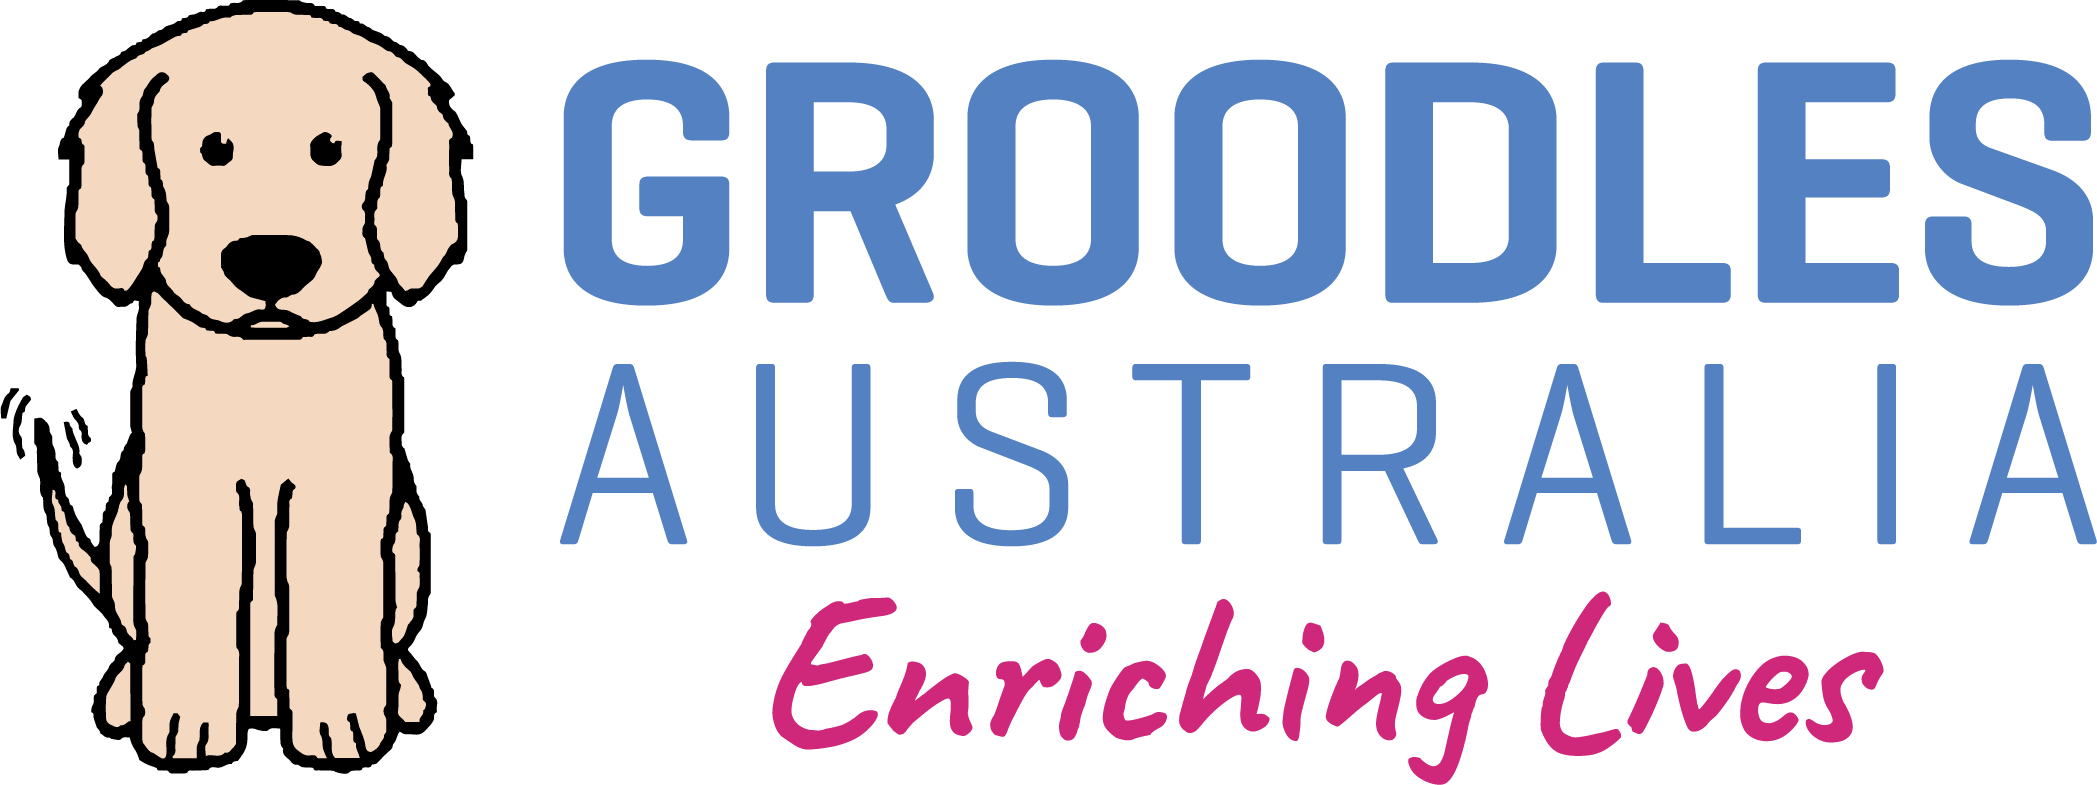 GroodlesAustralia-Logo